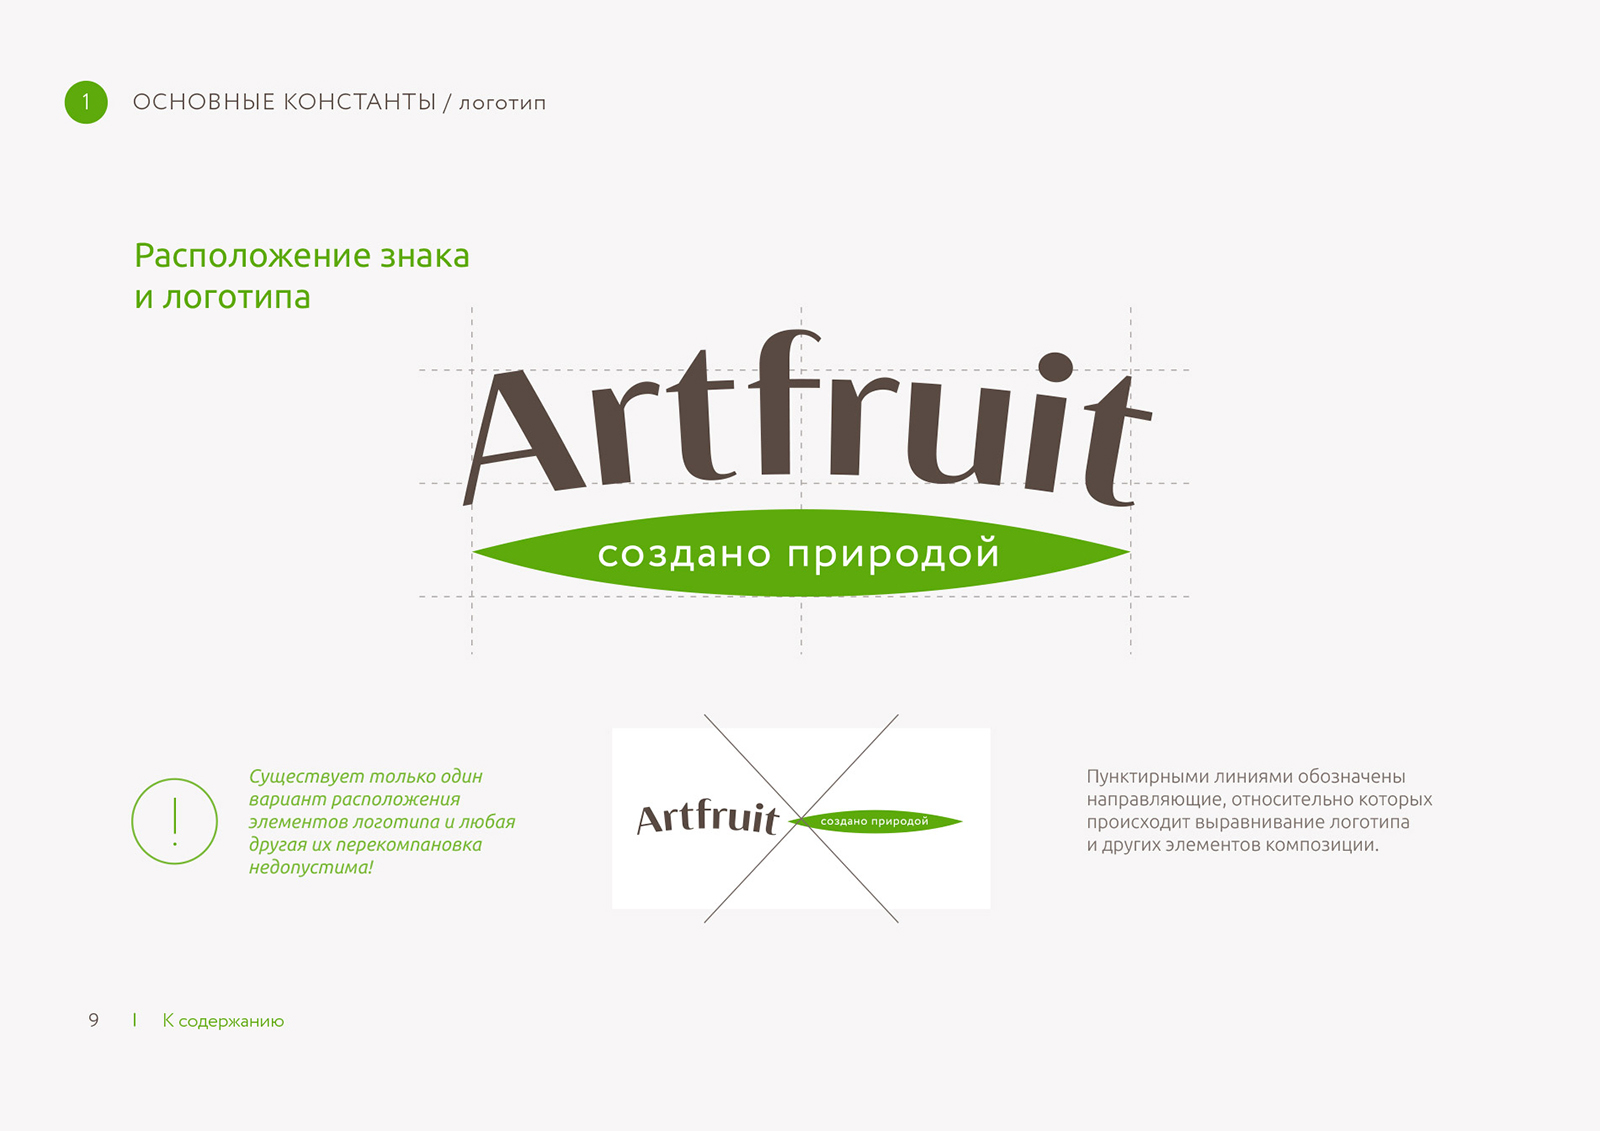 Оснвоные константы Artfruit